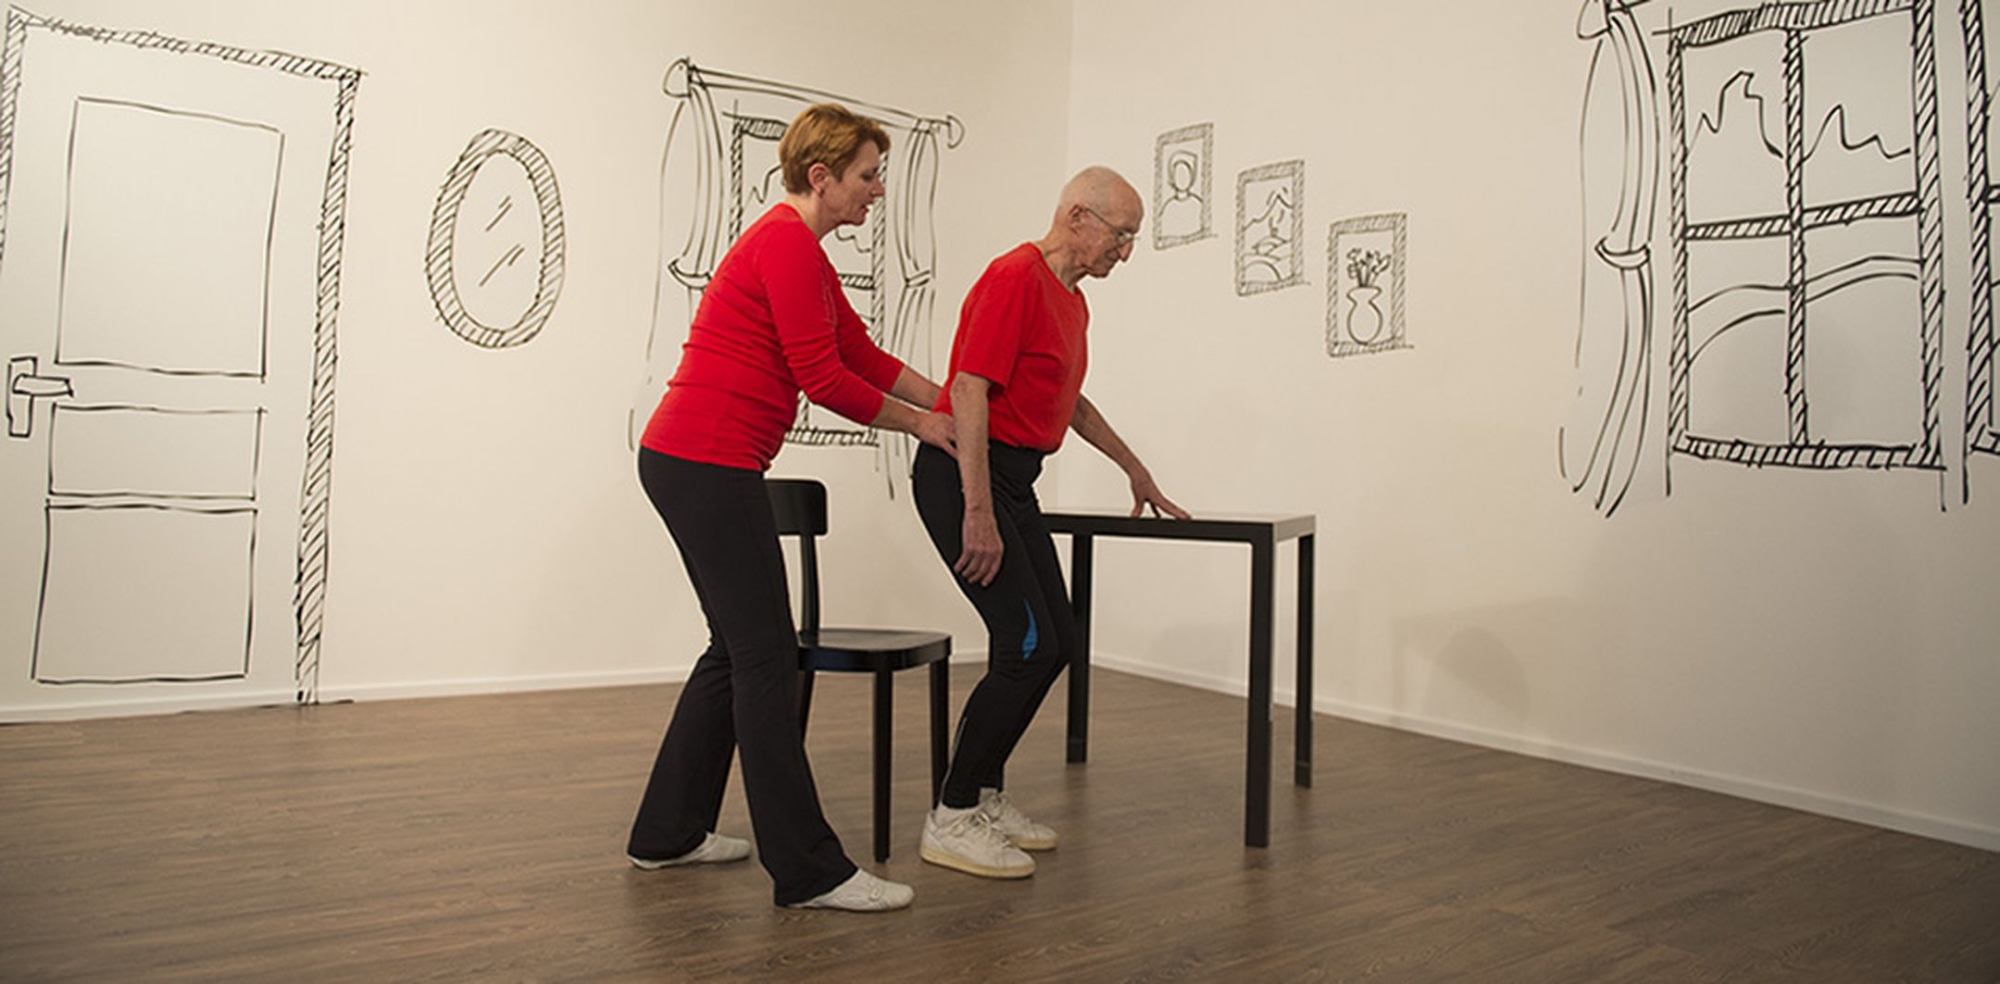 L’application destiné aux aînés comportera des exercices physiques qui sont étudiés depuis 2016 pour un projet suisse, notamment par la physiothérapeute valaisanne Anne-Gabrielle Mittaz (à gauche).  